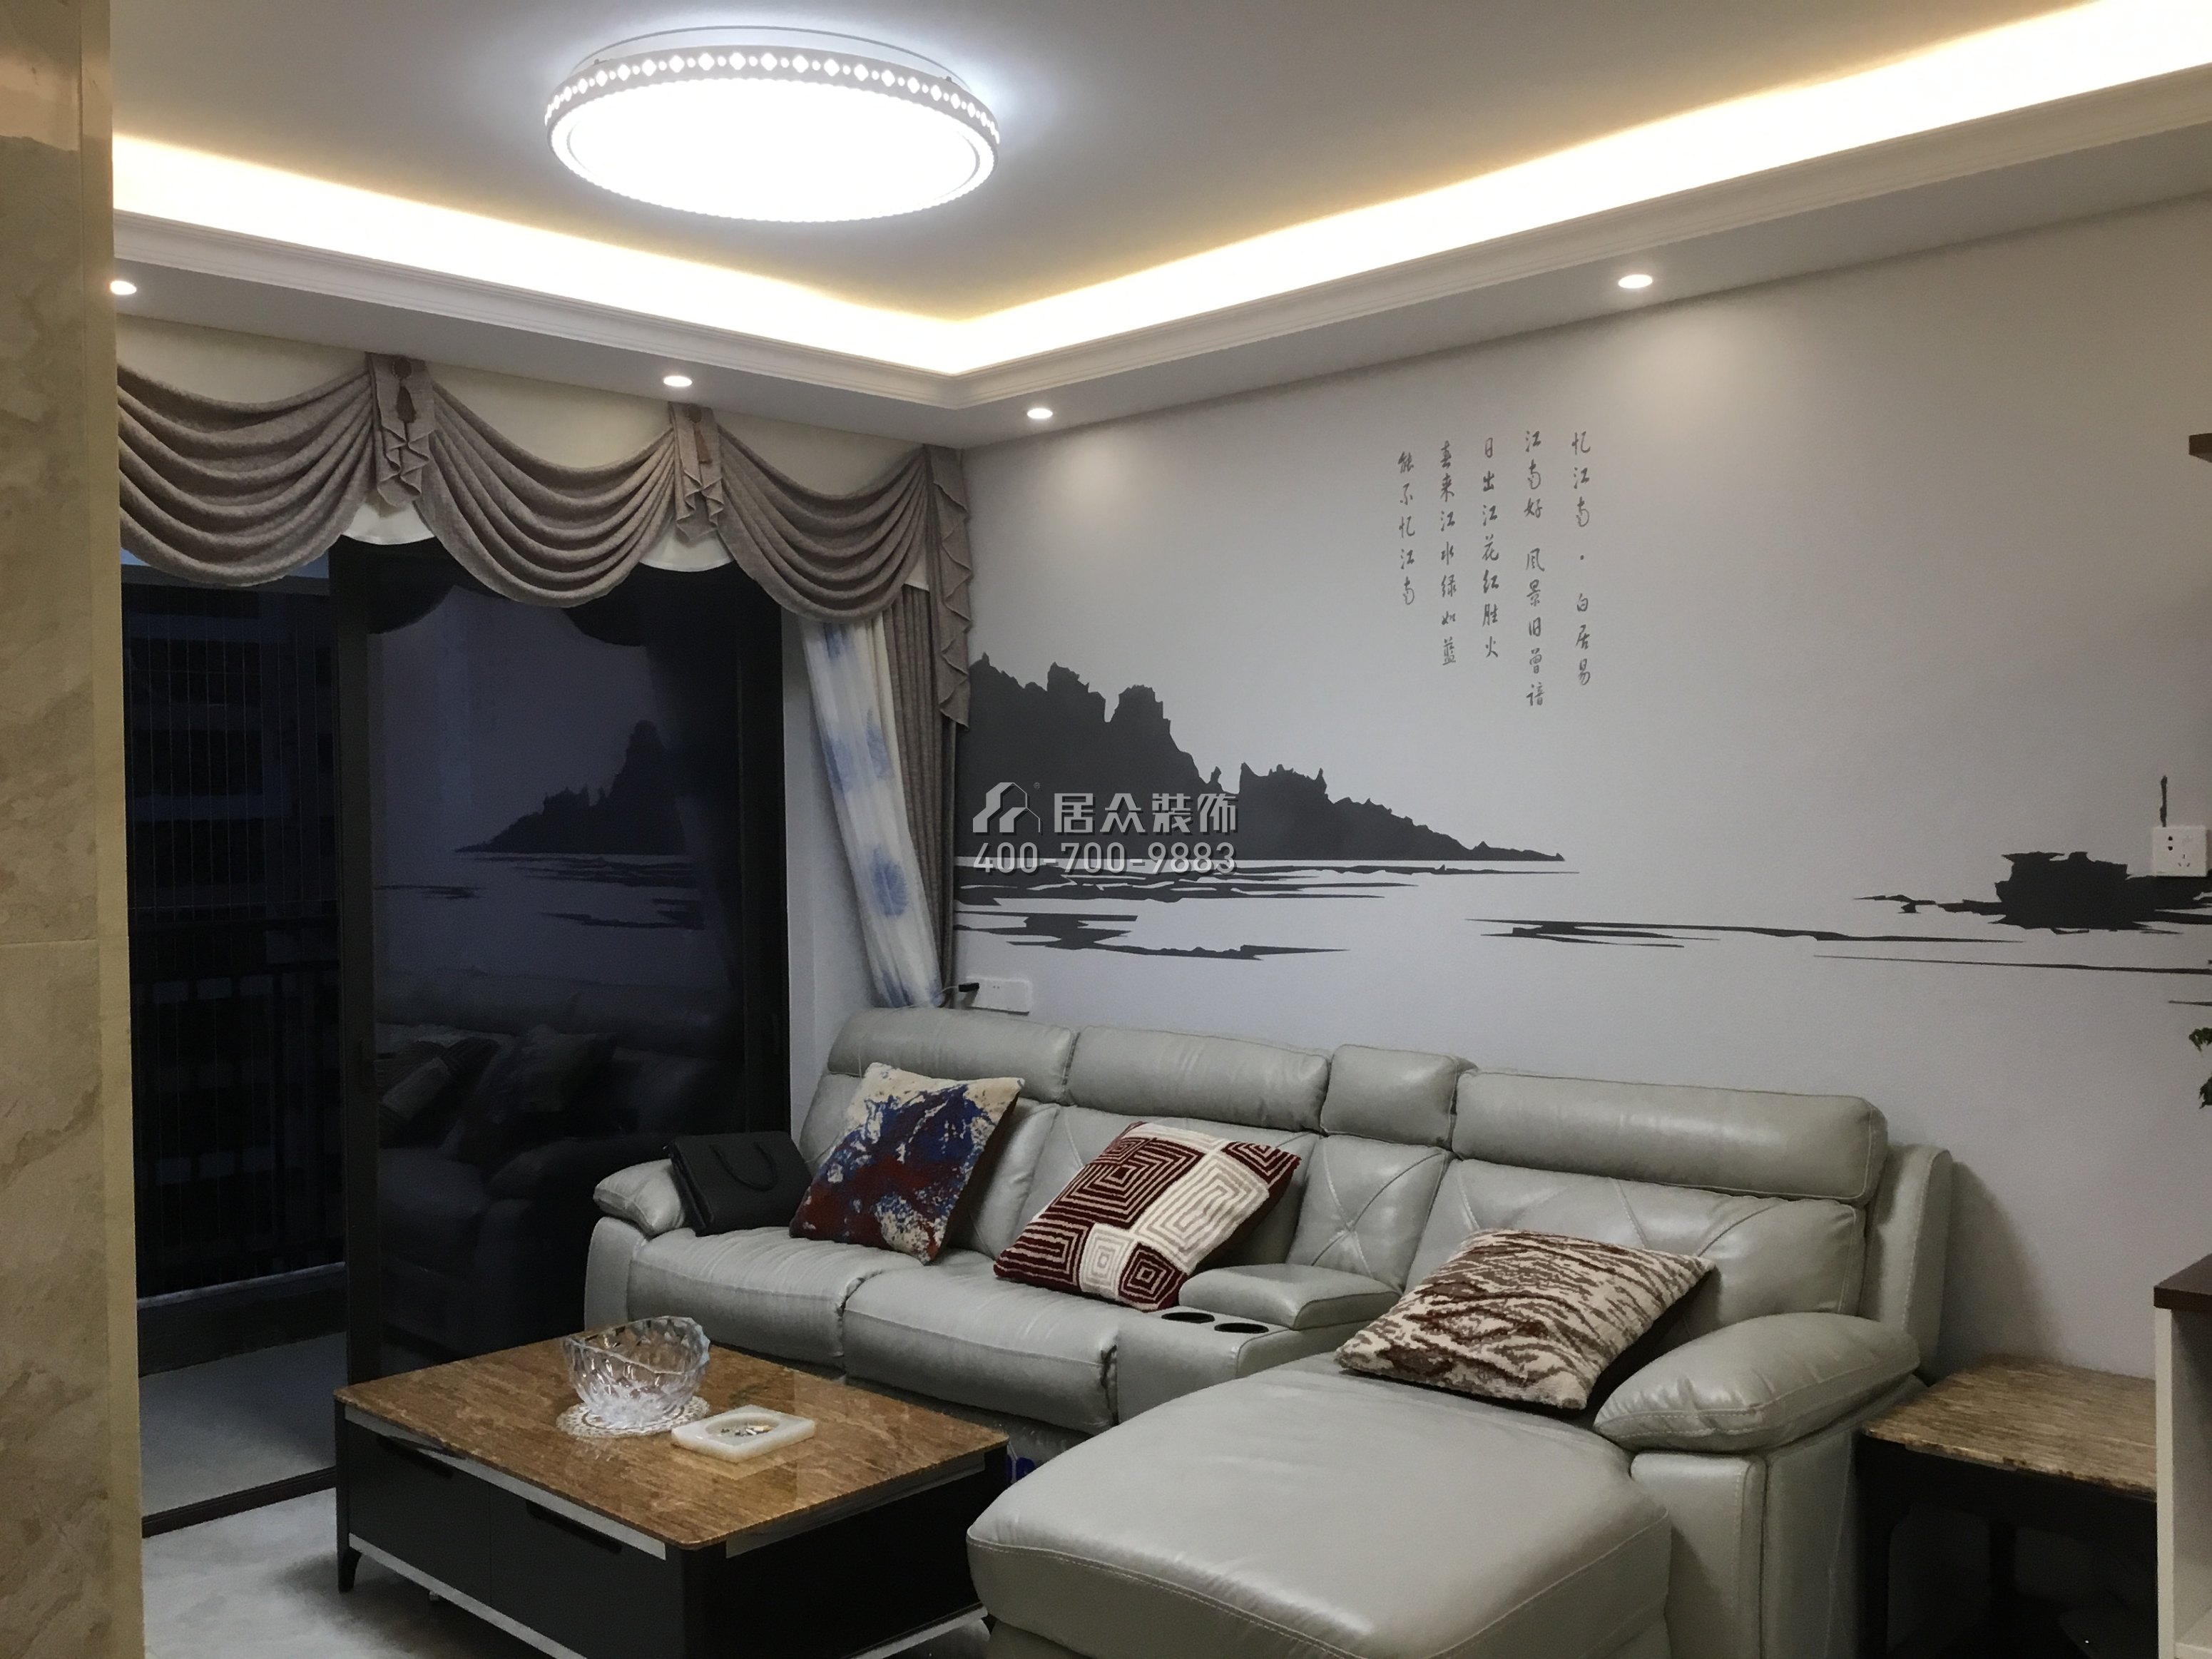 中駿四季陽光85平方米現代簡約風格平層戶型客廳裝修效果圖